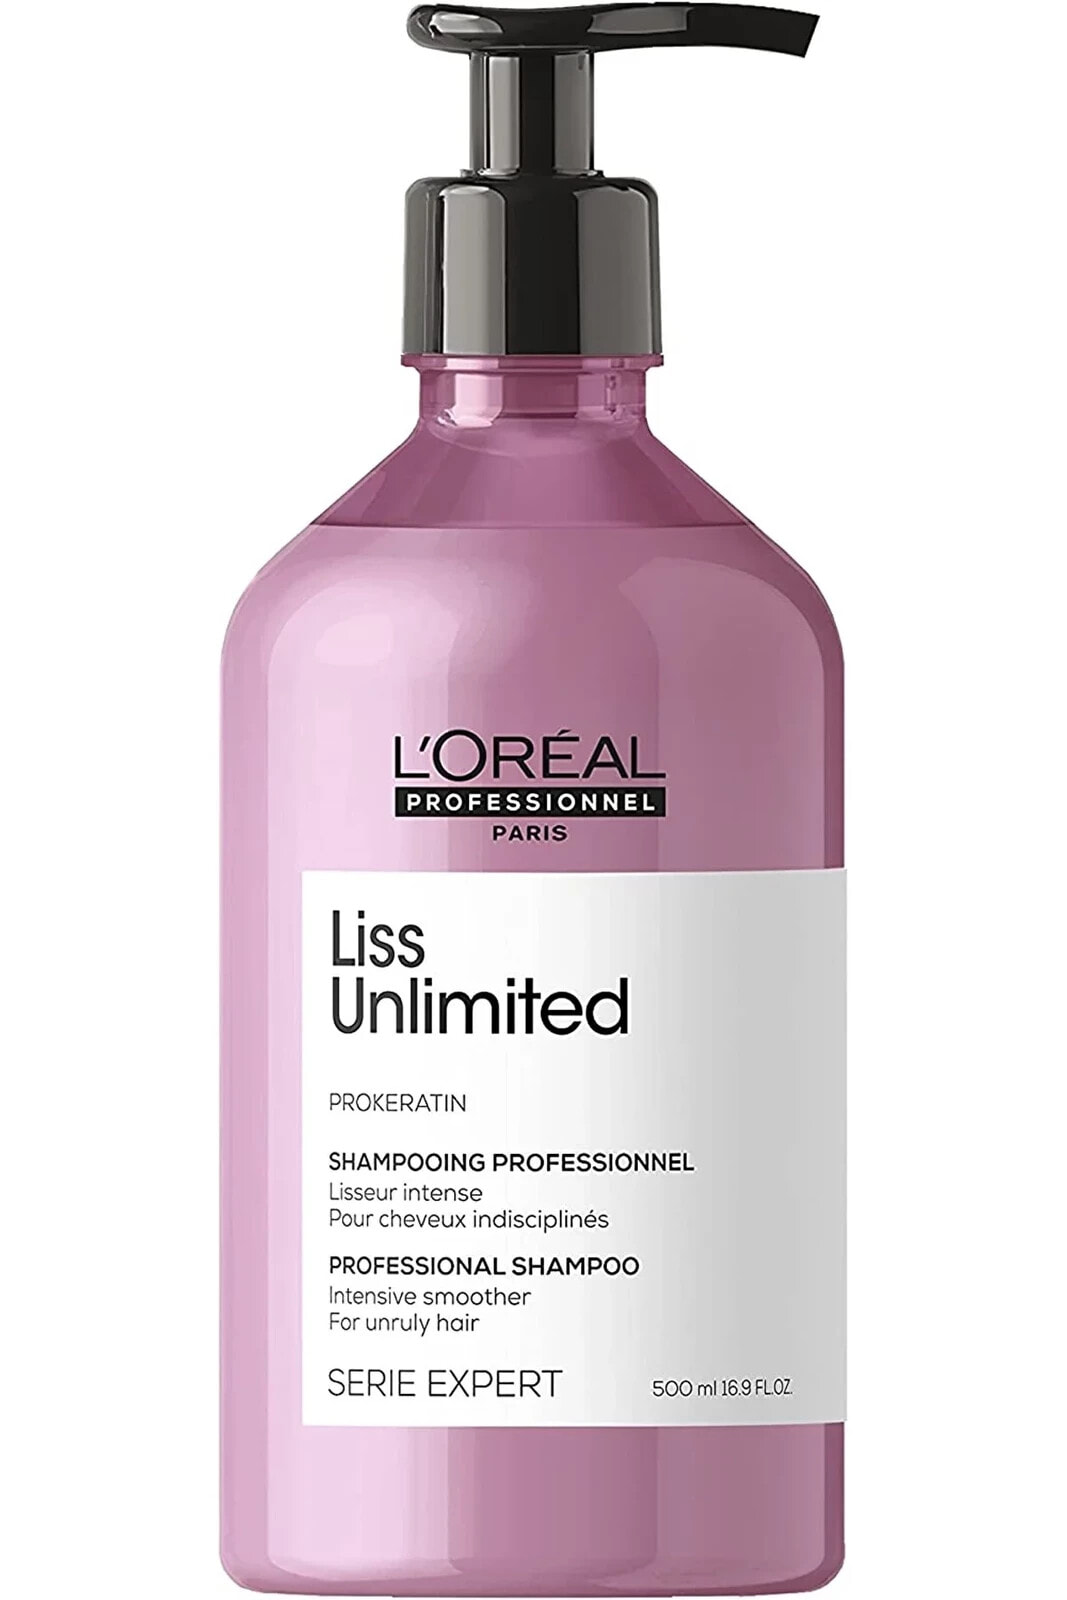 LOREAL Liss Unlimited Prokeratin Asi Saçlar İçin Düzleştirici -Pürüzsüzleştici Şampuan 500mlSED6496